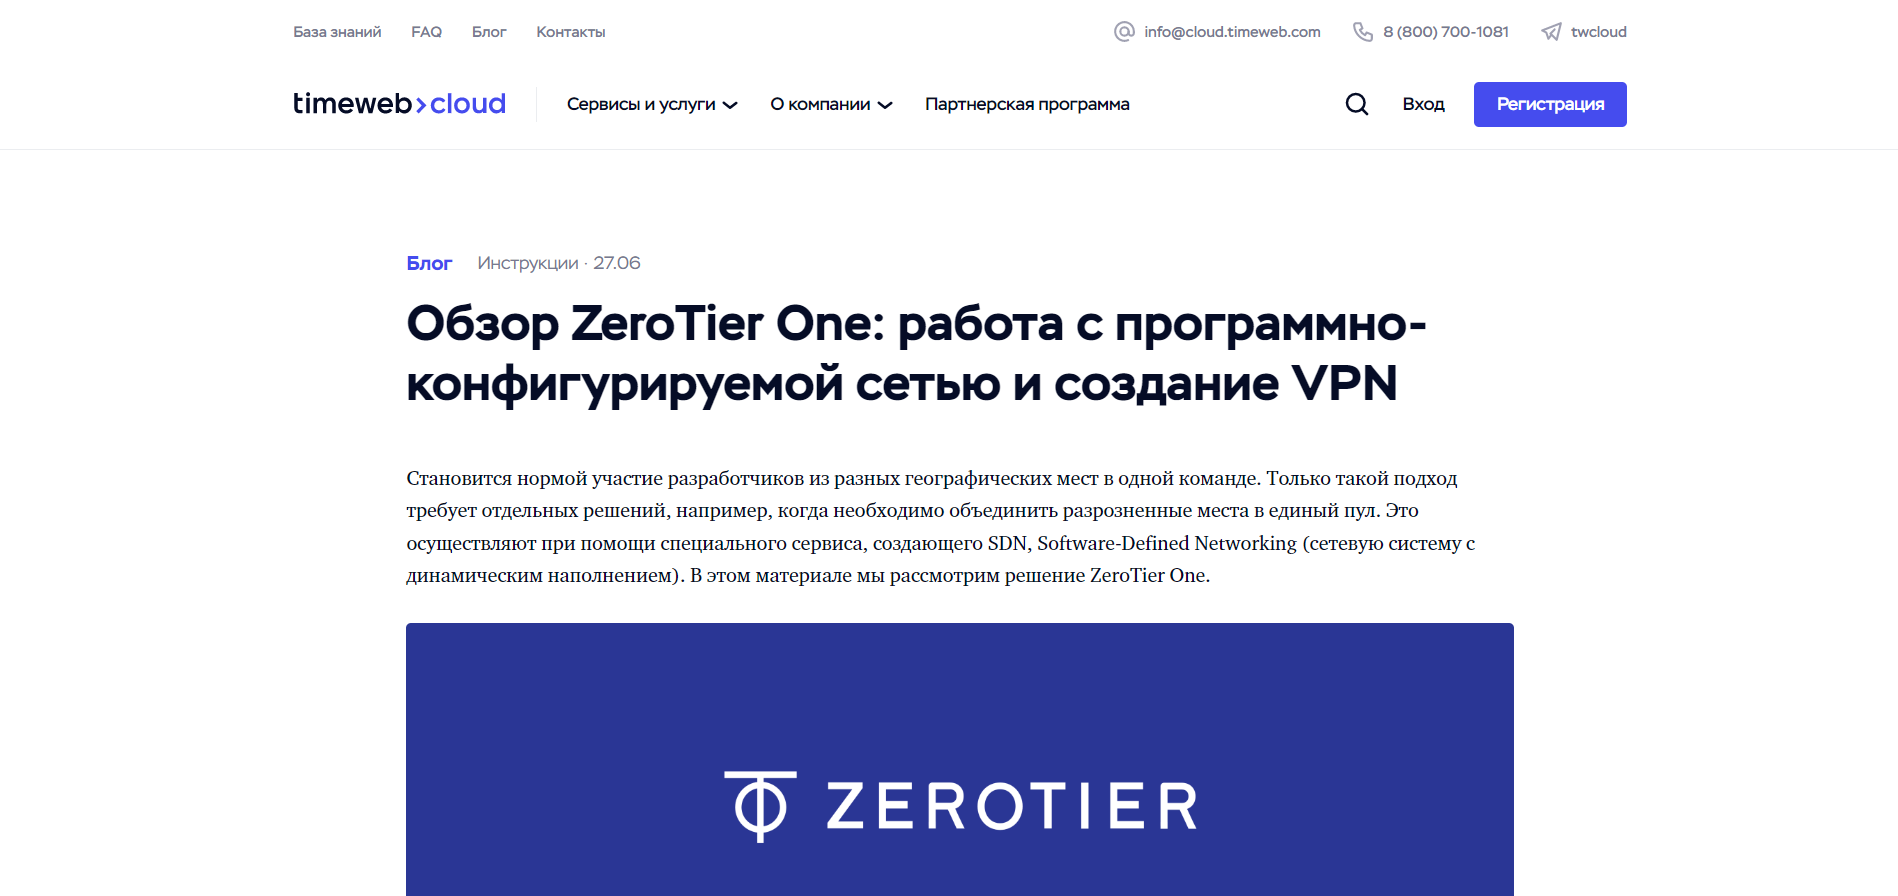 Обзор ZeroTier One: работа с программно-конфигурируемой сетью и создание VPN